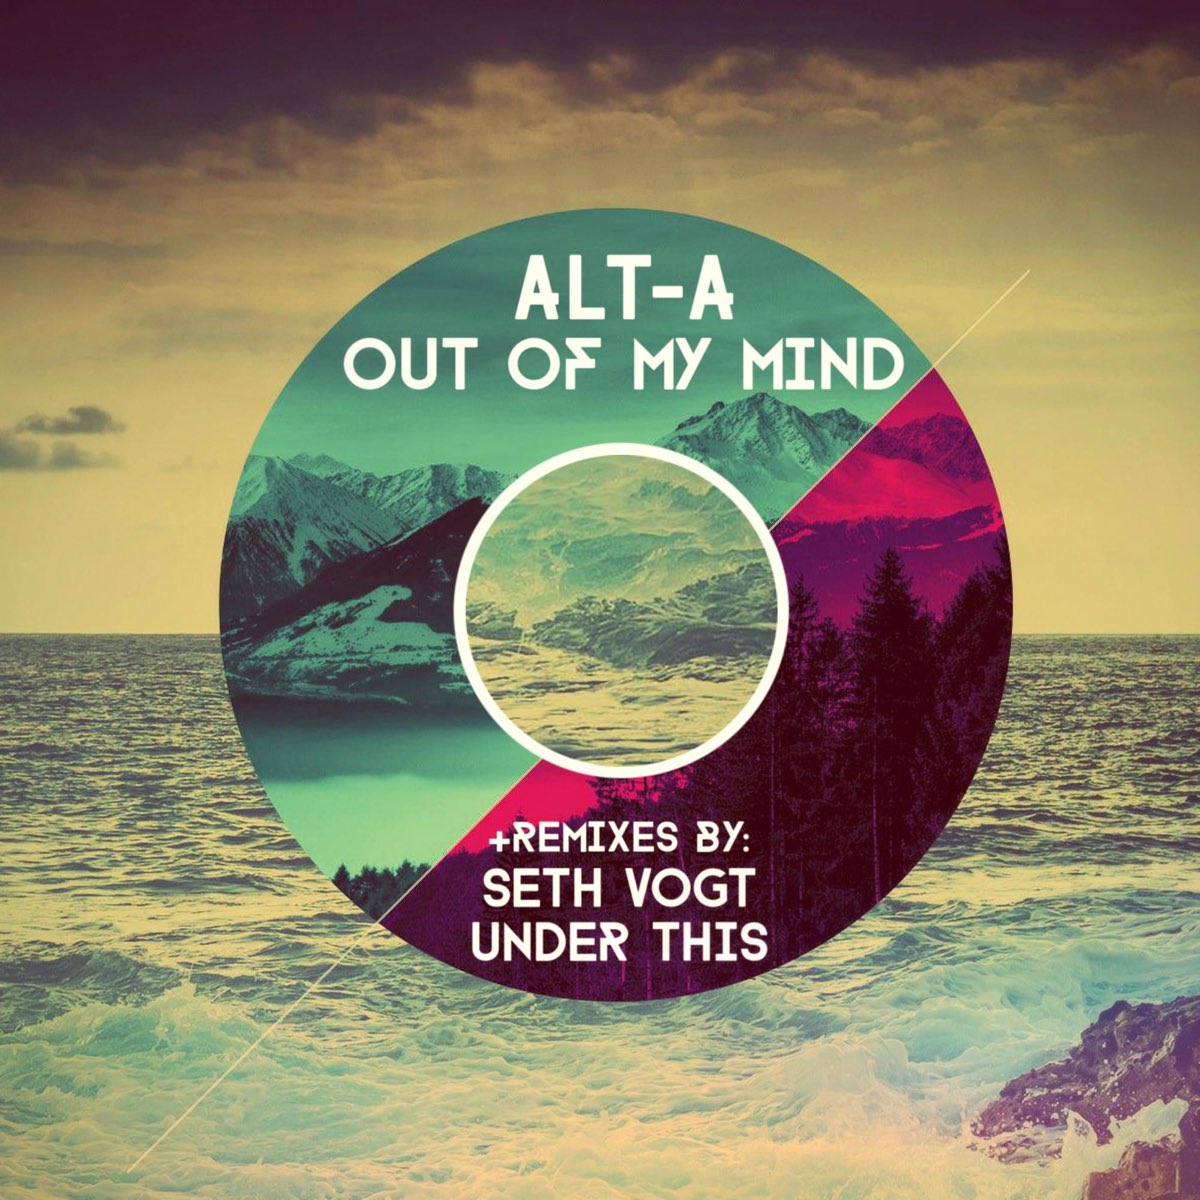 Out of Mind. Out of my Mind mp3. Alt Music. Alt-a - альбомы.